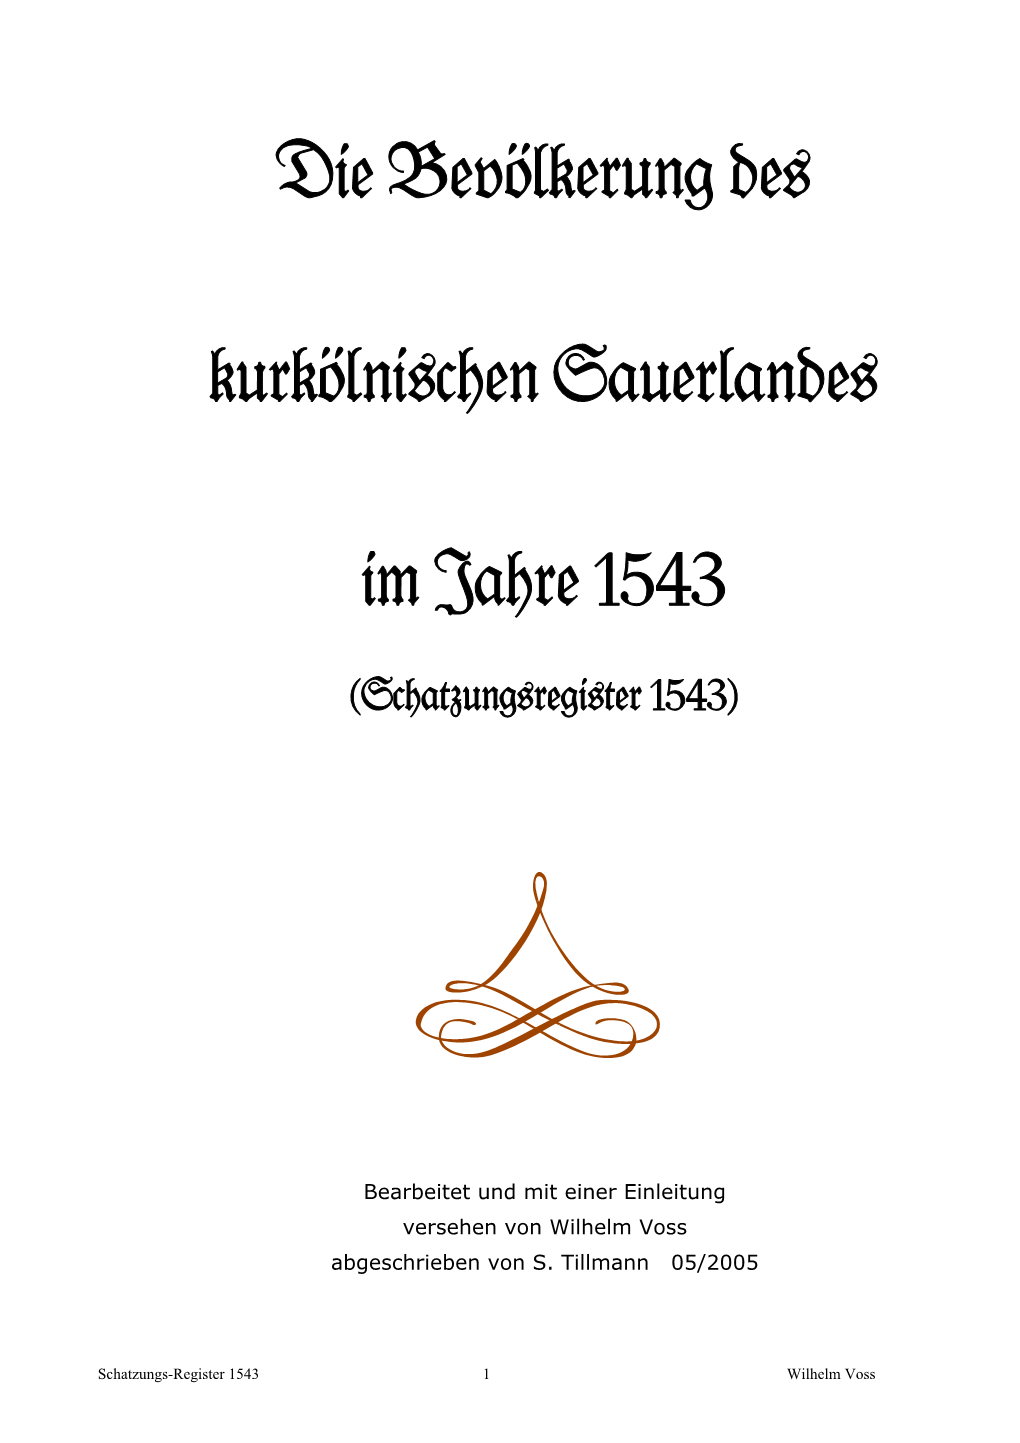 Schatzungsregister 1543 Des Kurkölnischen Sauerlandes